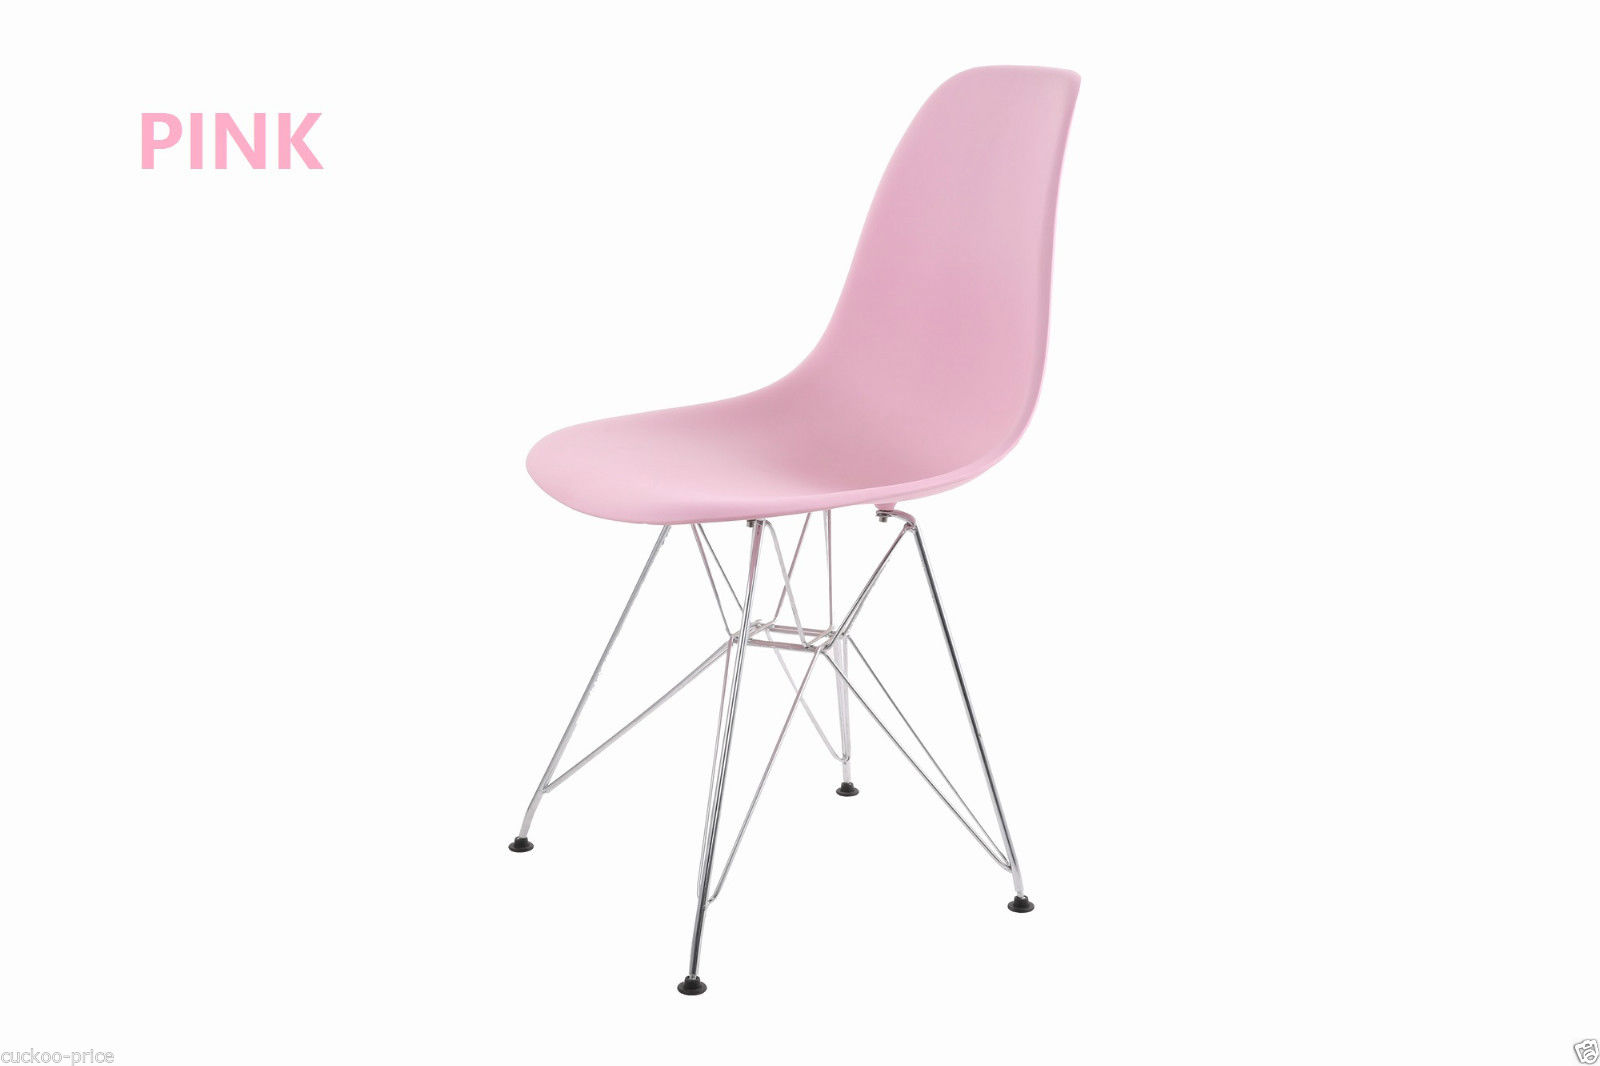 Budget Designer Epsom Designer Pink Dining Chair Metal Base